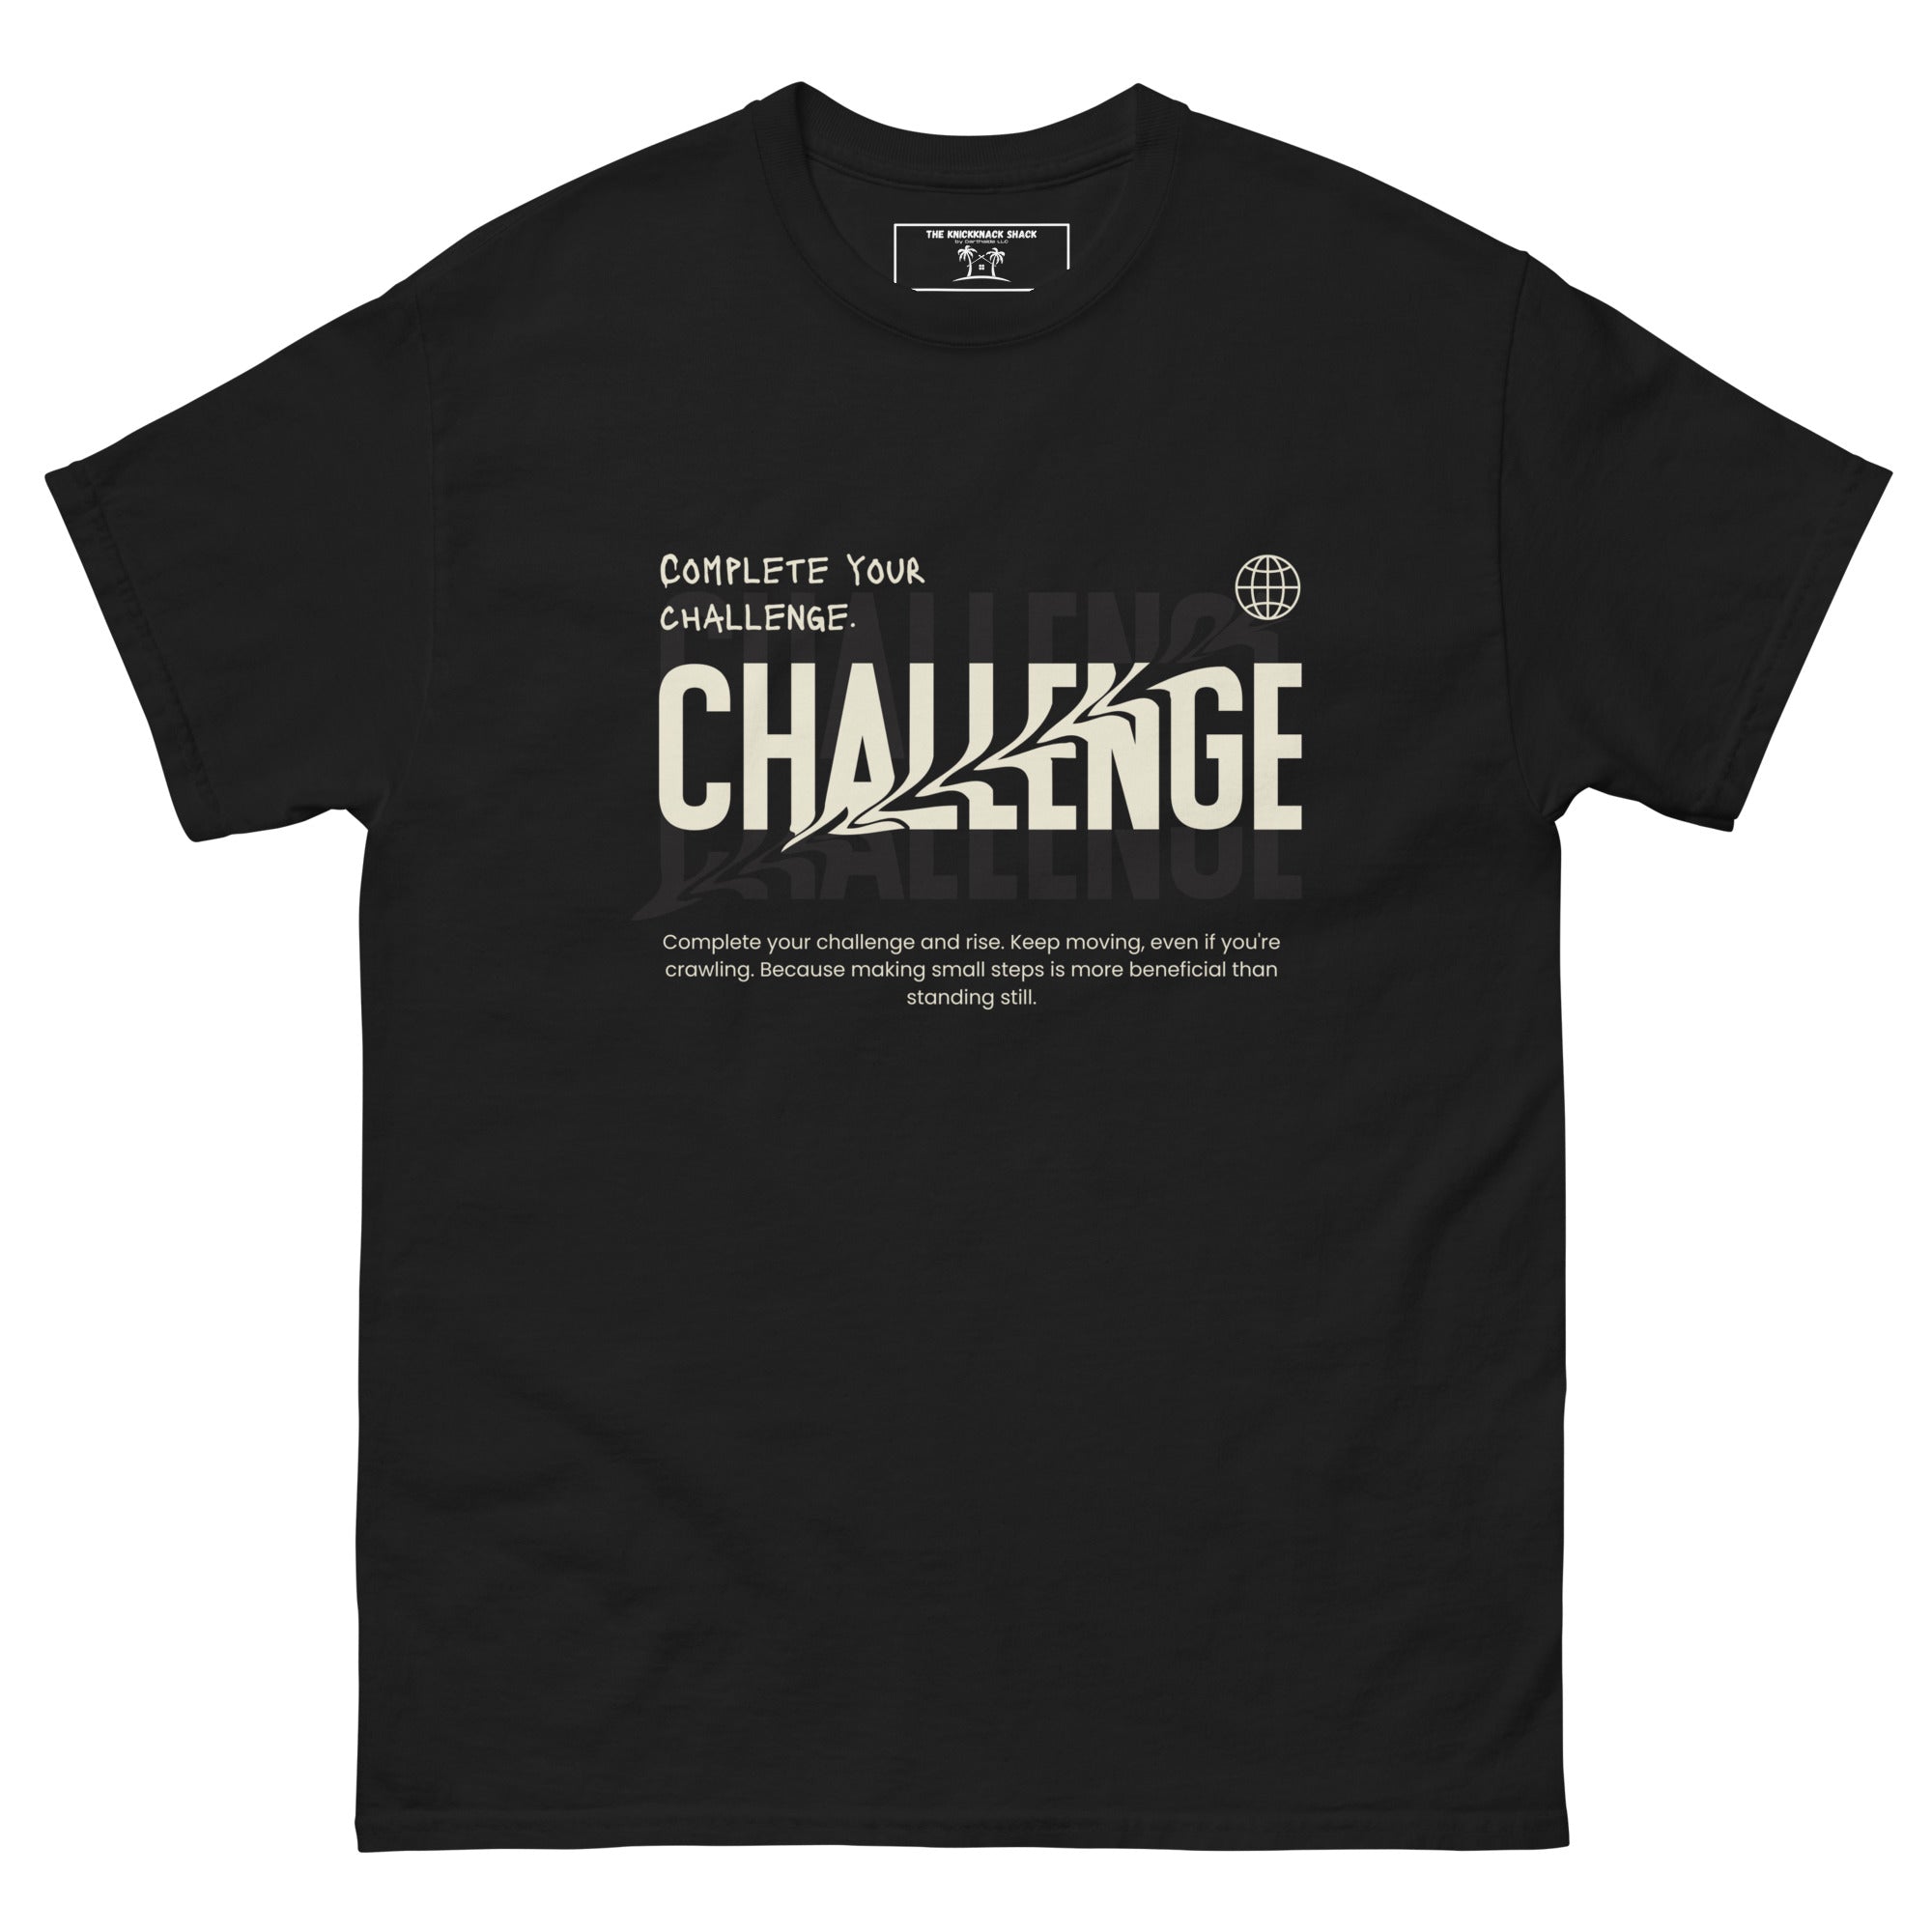 Tee-shirt classique - Complétez votre défi (couleurs sombres)